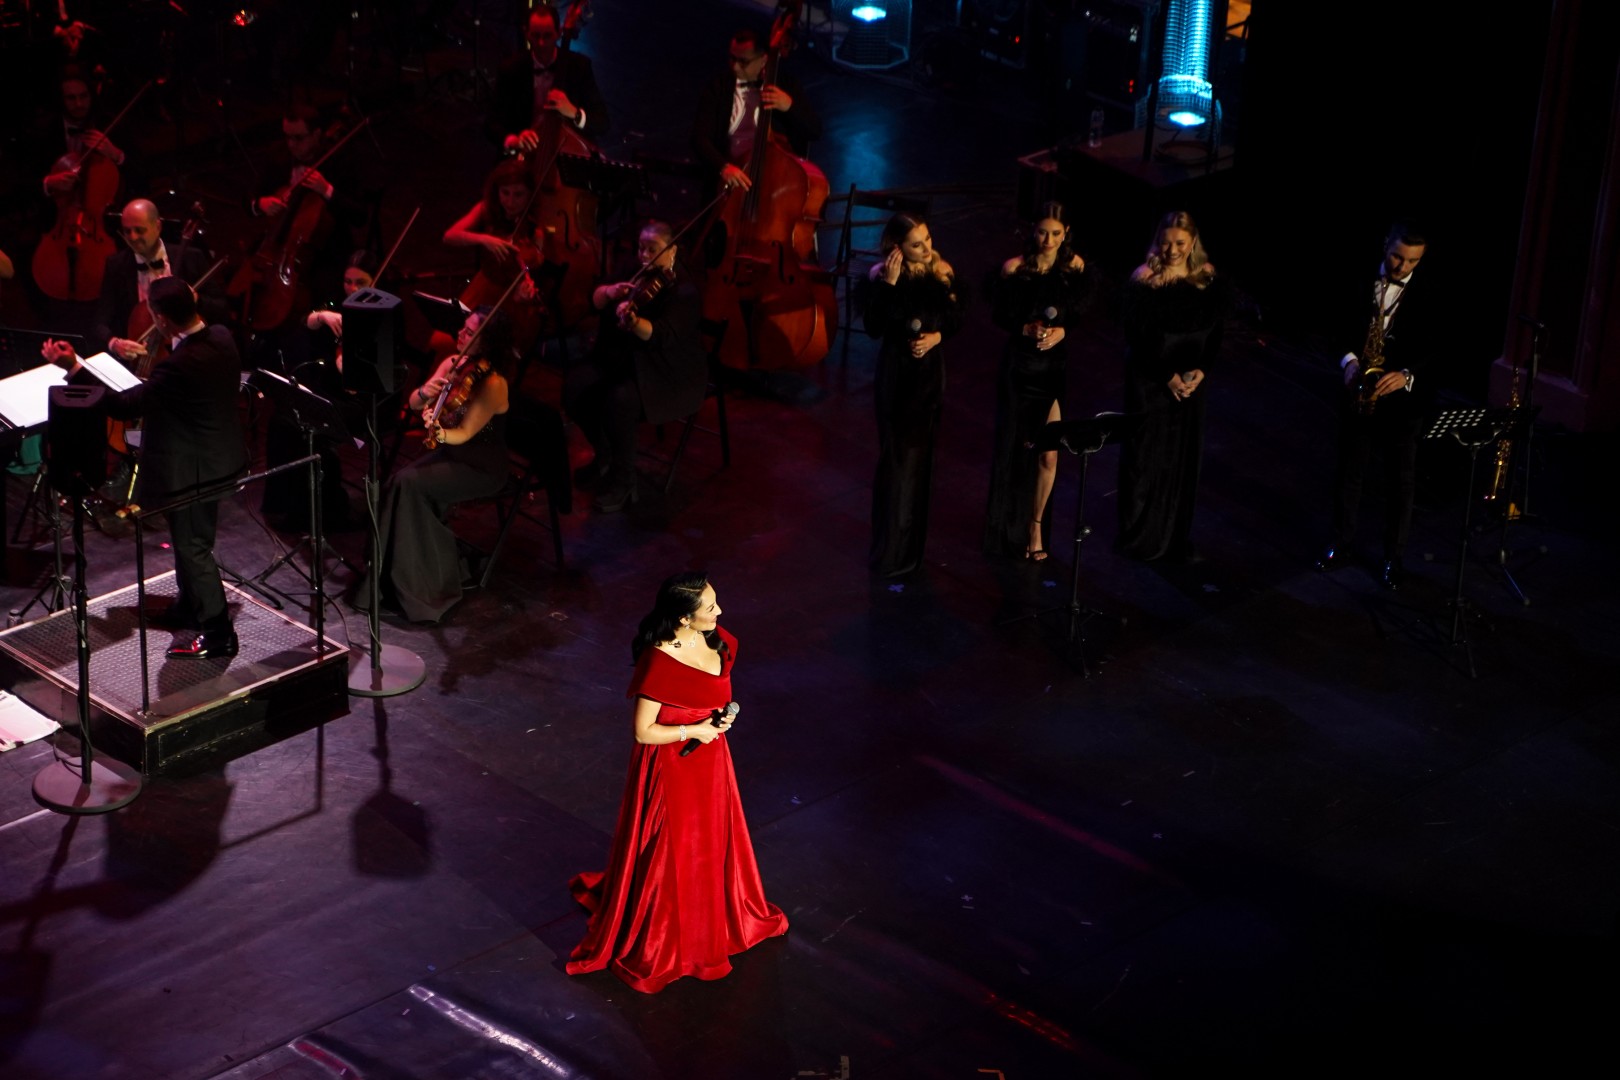 Andra at Opera Națională București in Bucharest on December 5, 2022 (8d0360827f)